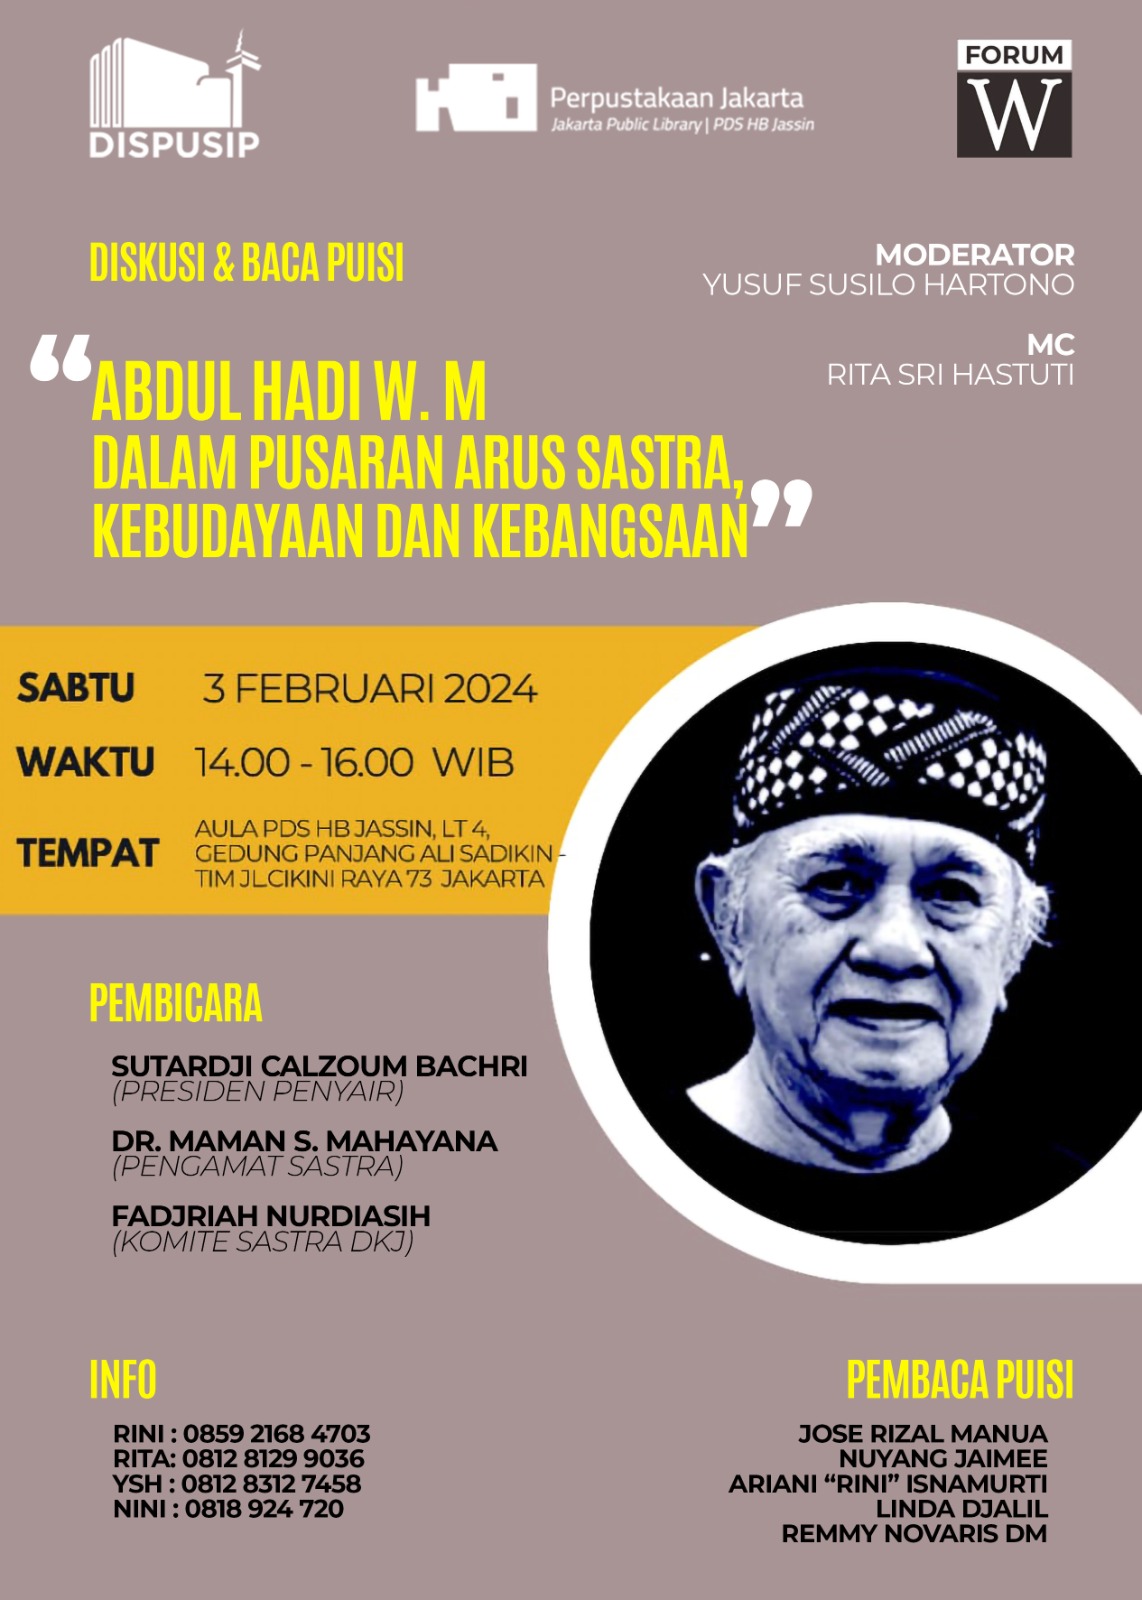 Diskusi & Baca Puisi "Abdul Hadi W.M Dalam Pusaran Arus Sastra, Kebudayaan Dan Kebangsaan"